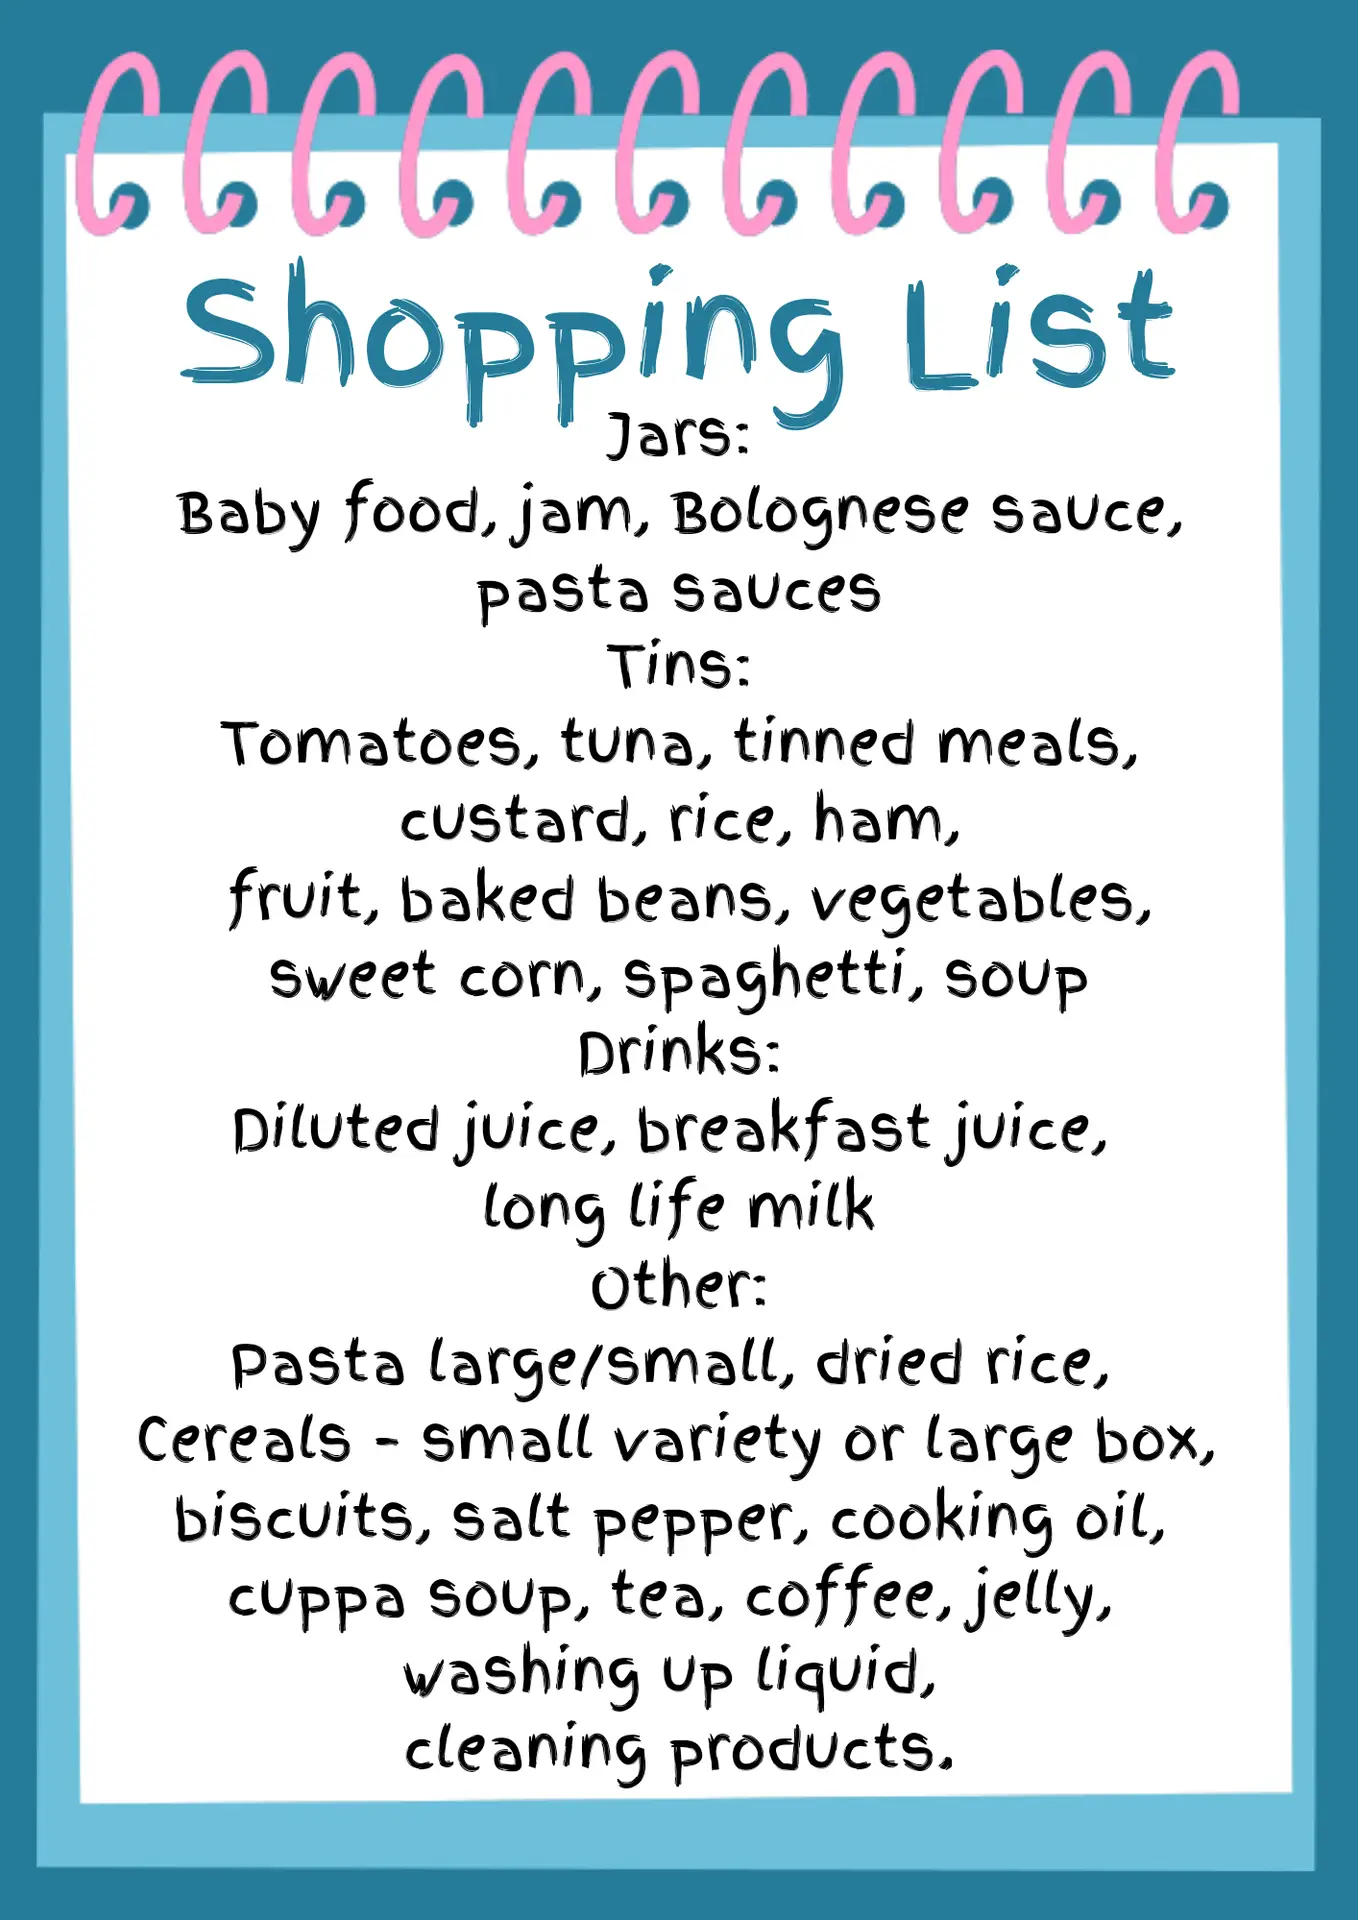 Storehouse shopping list